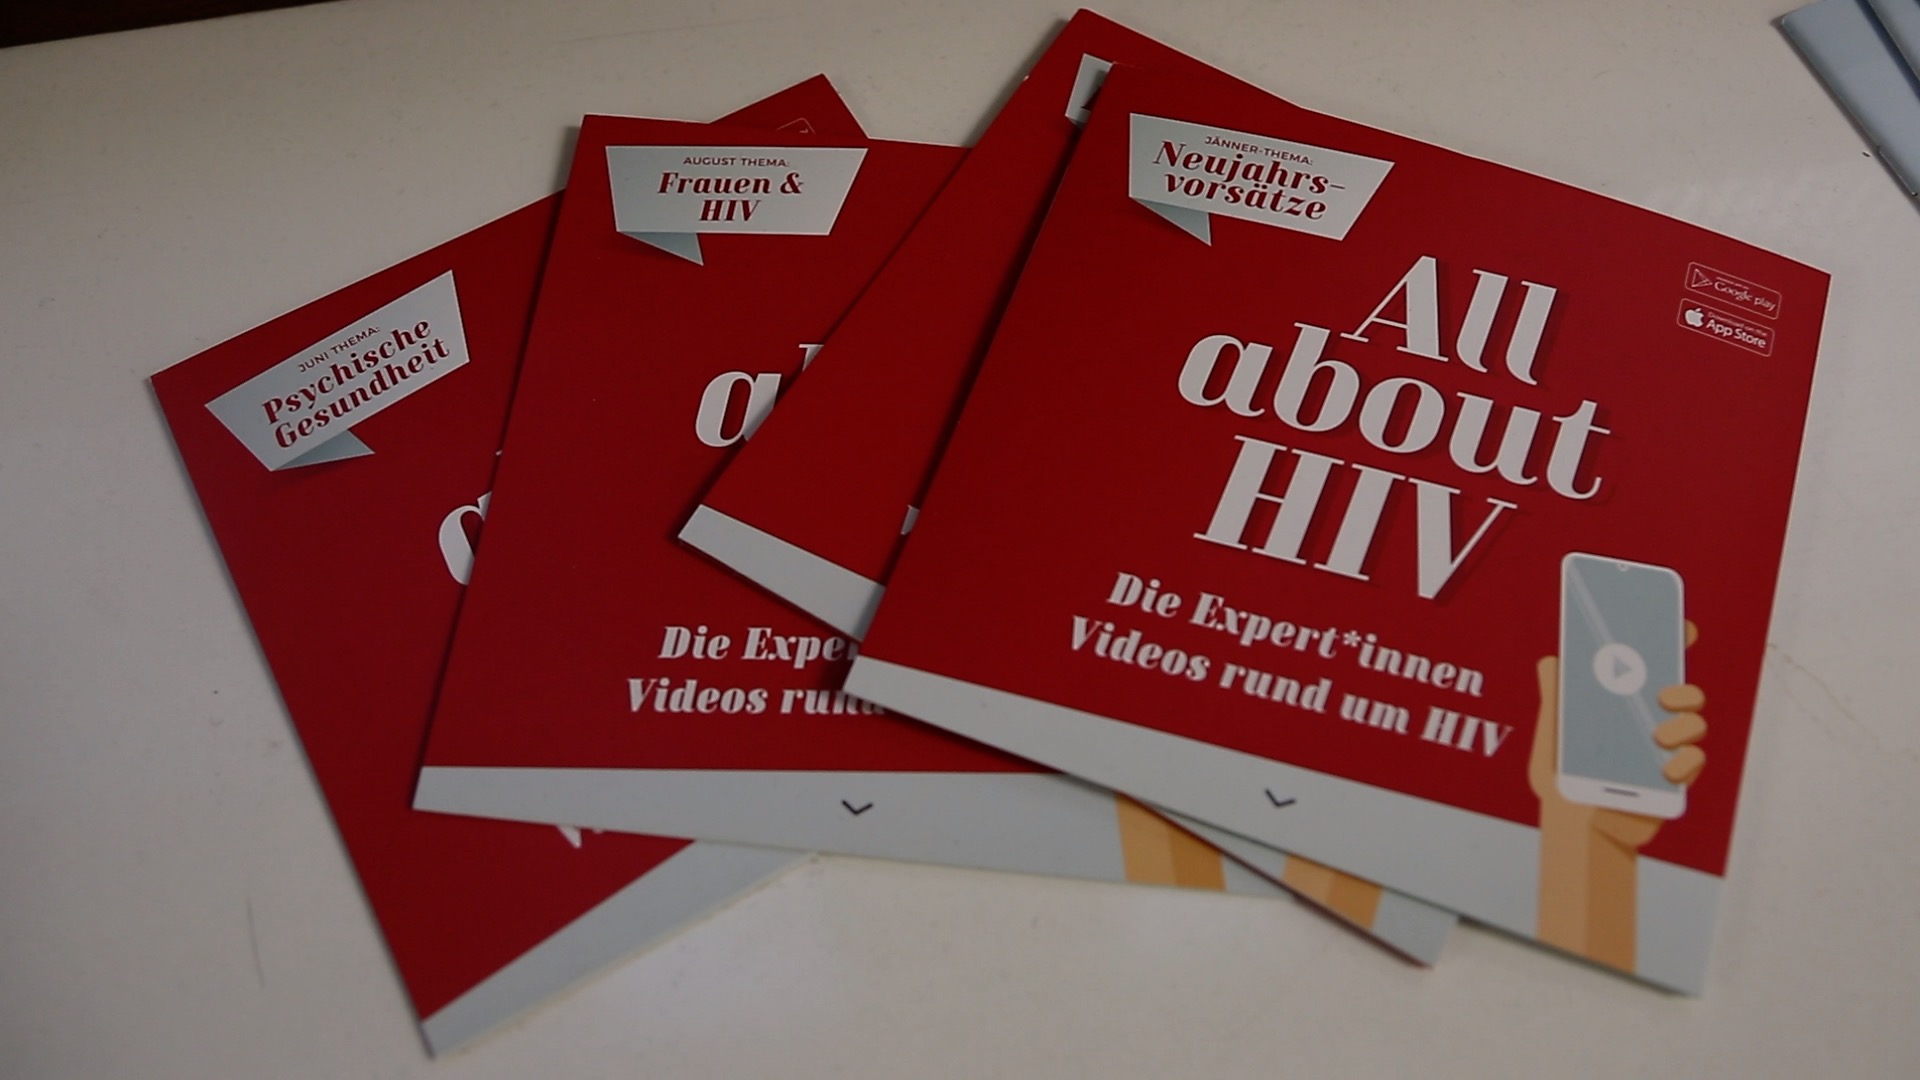 Die AIDS-Hilfe Tirol